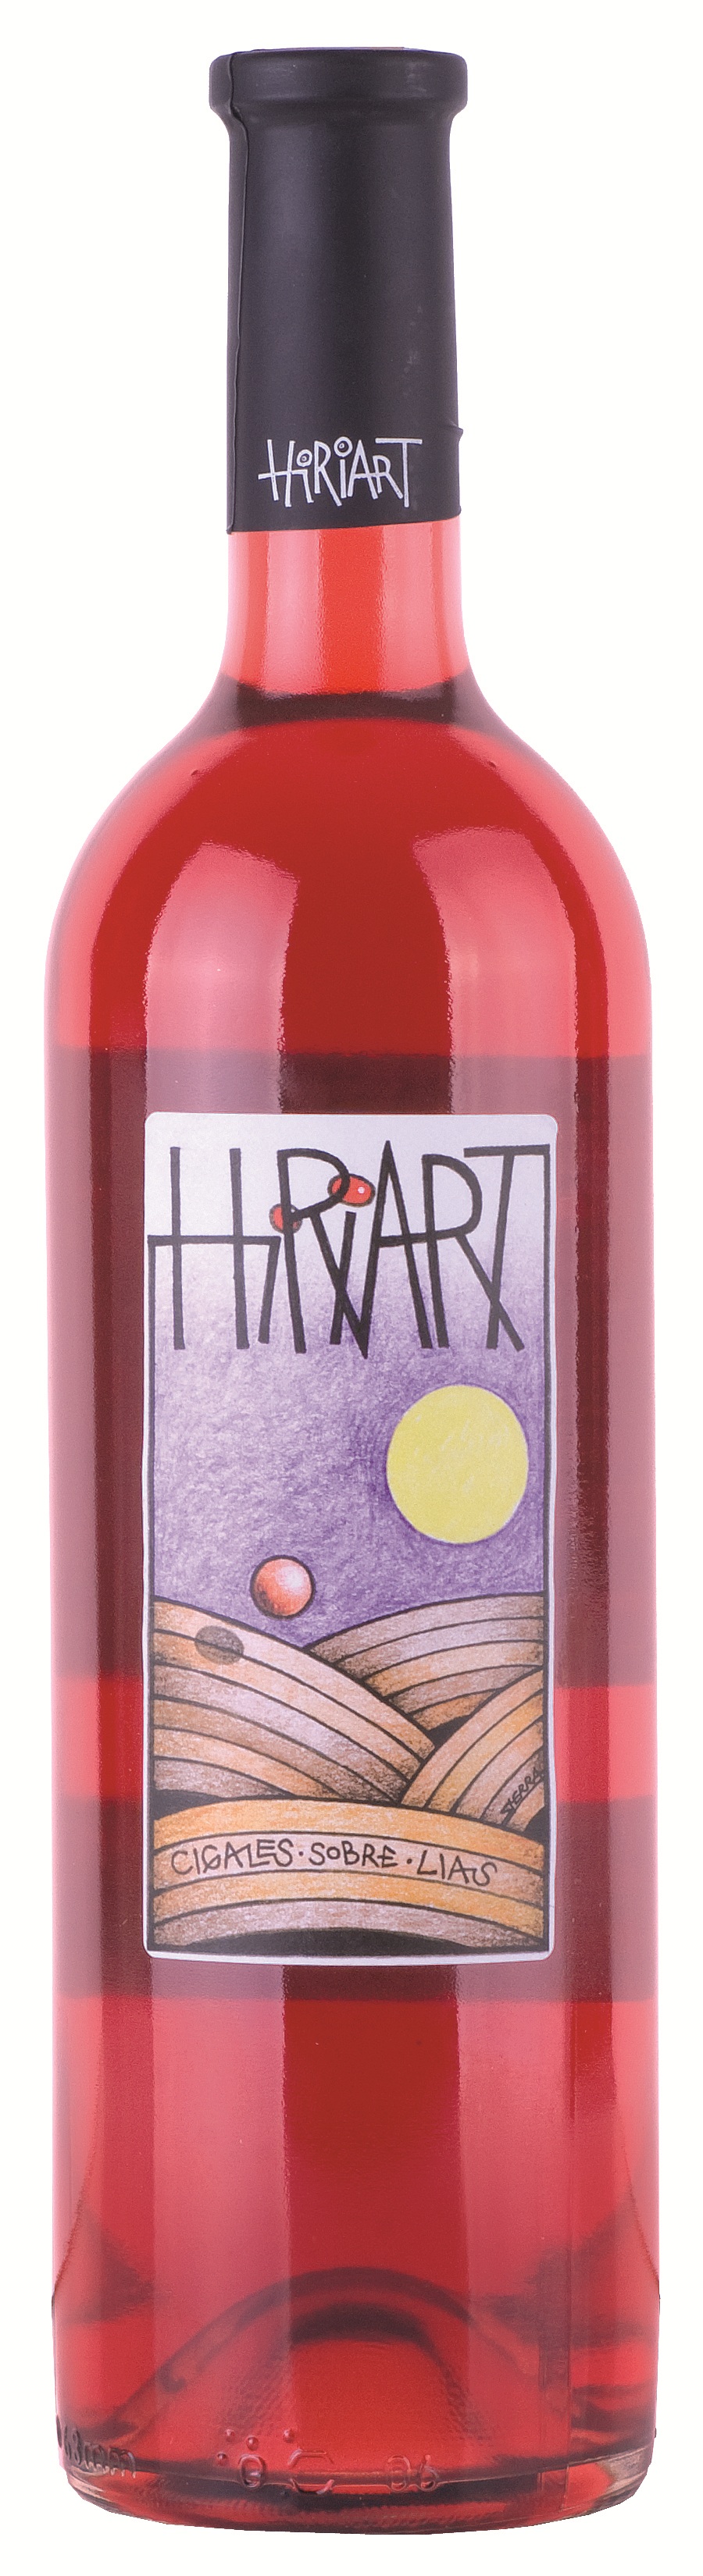 Imagen de la botella de Vino Hiriart Rosado Fermentado en Barrica